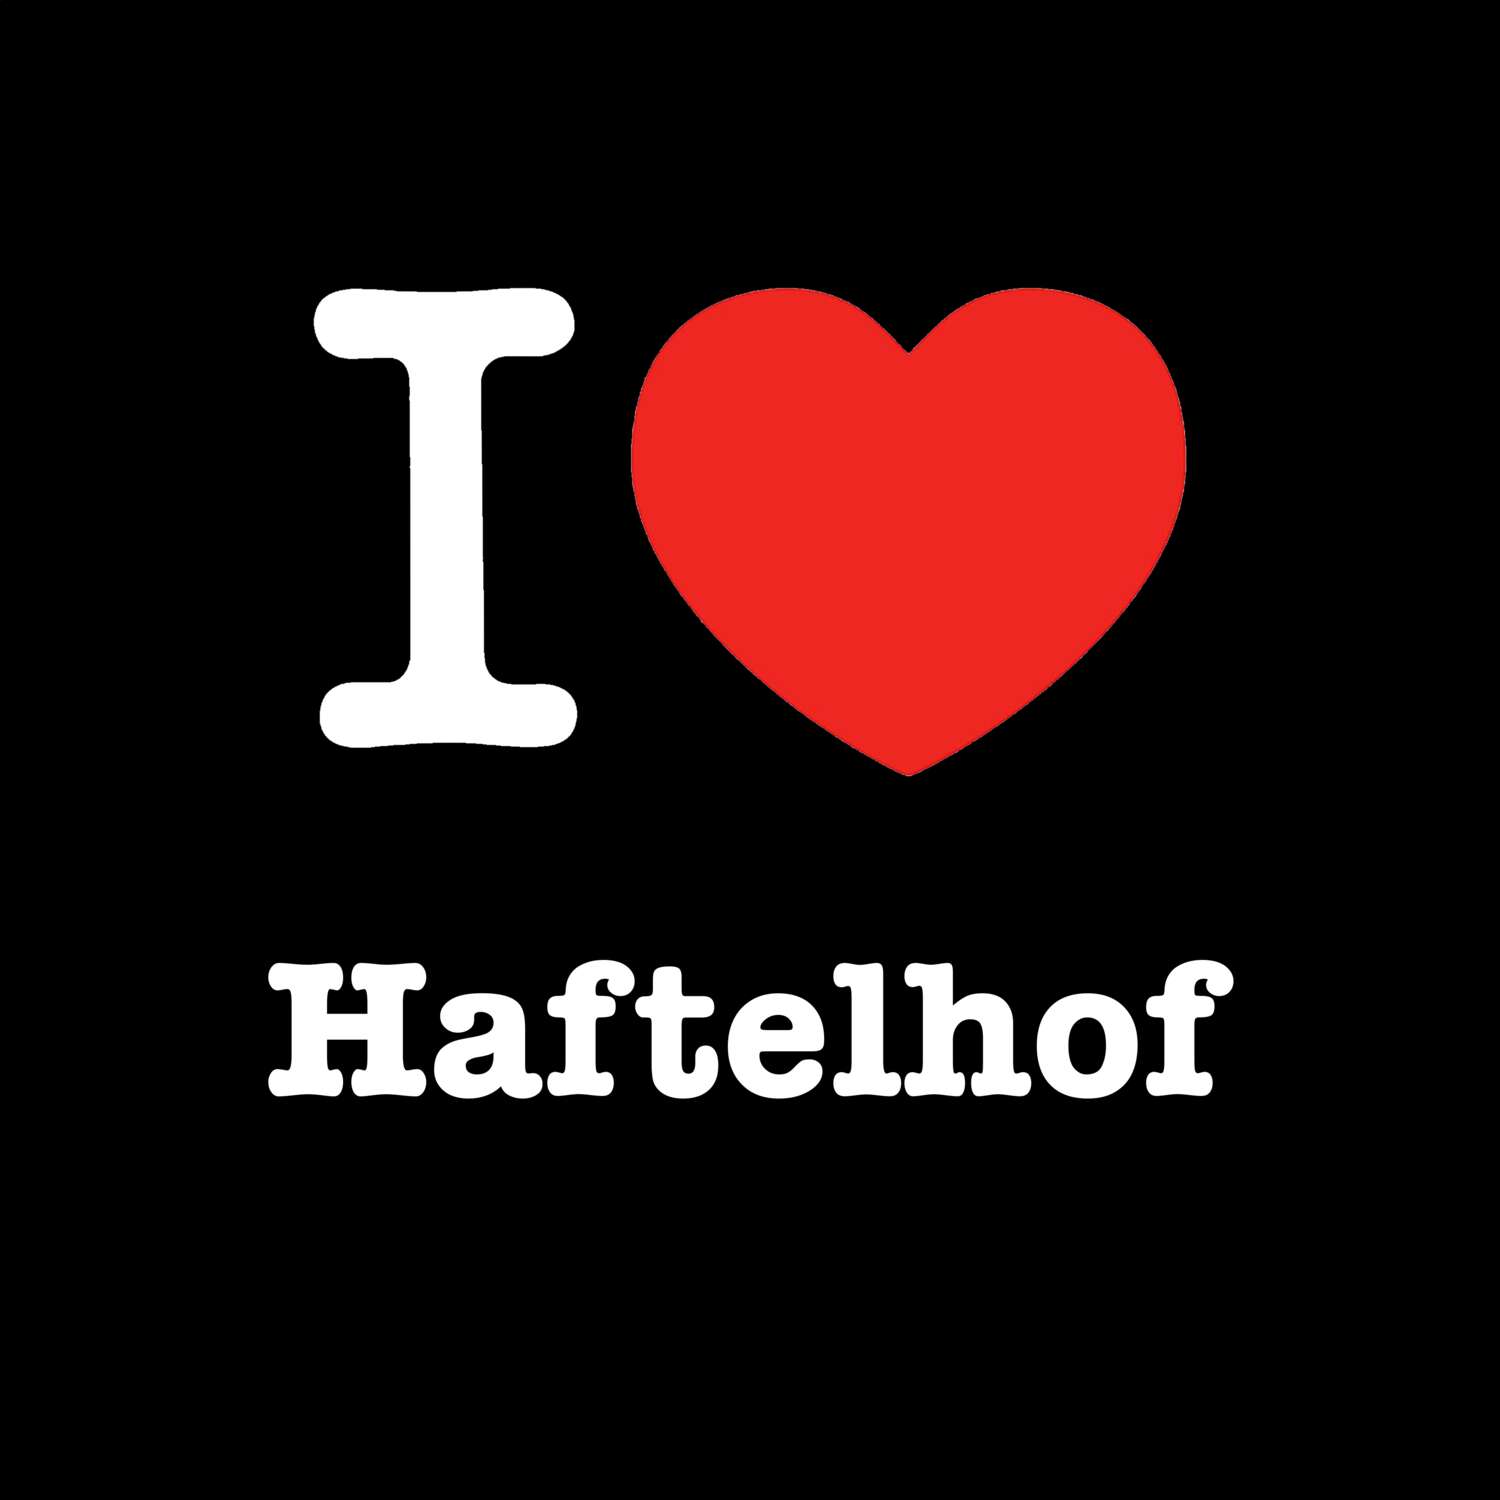 Haftelhof T-Shirt »I love«